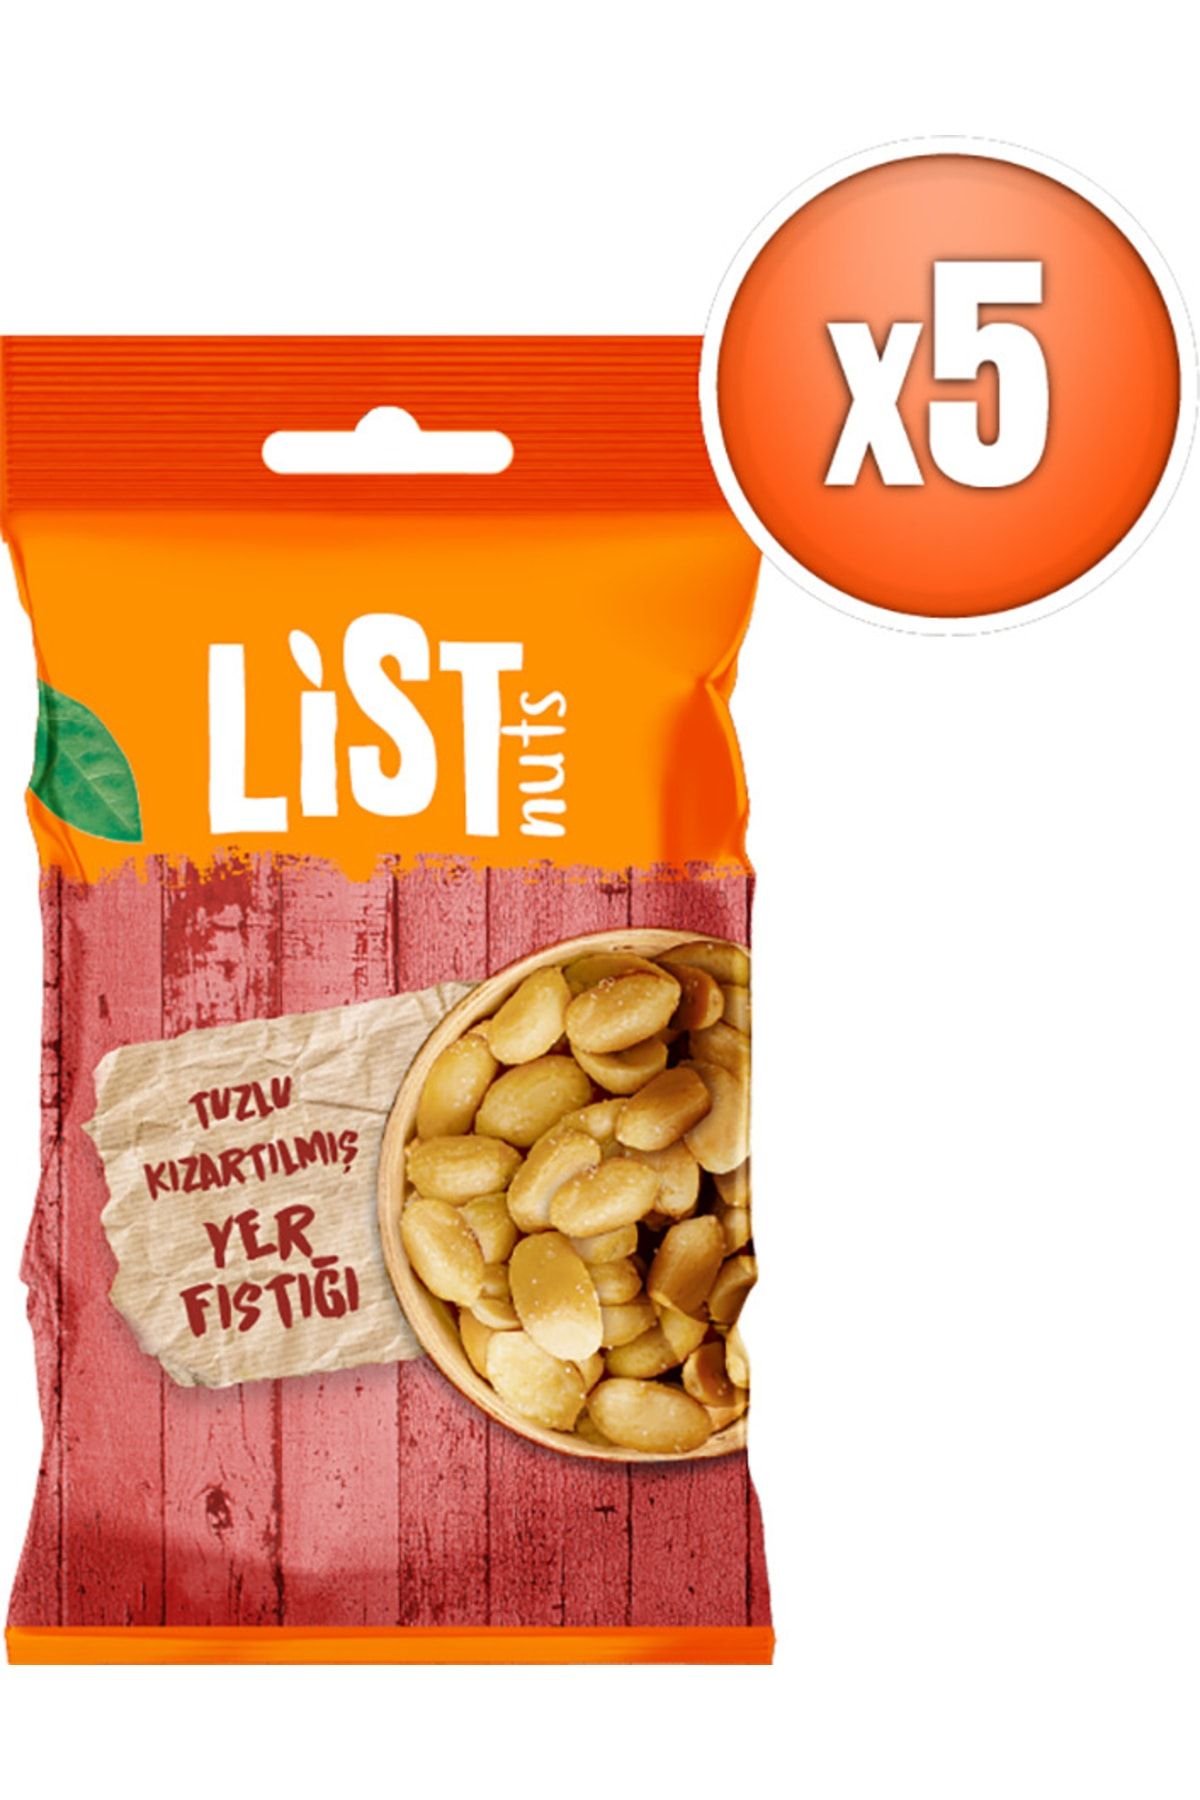 List Nuts Kızarmış Yer Fıstığı 5 X 40 G